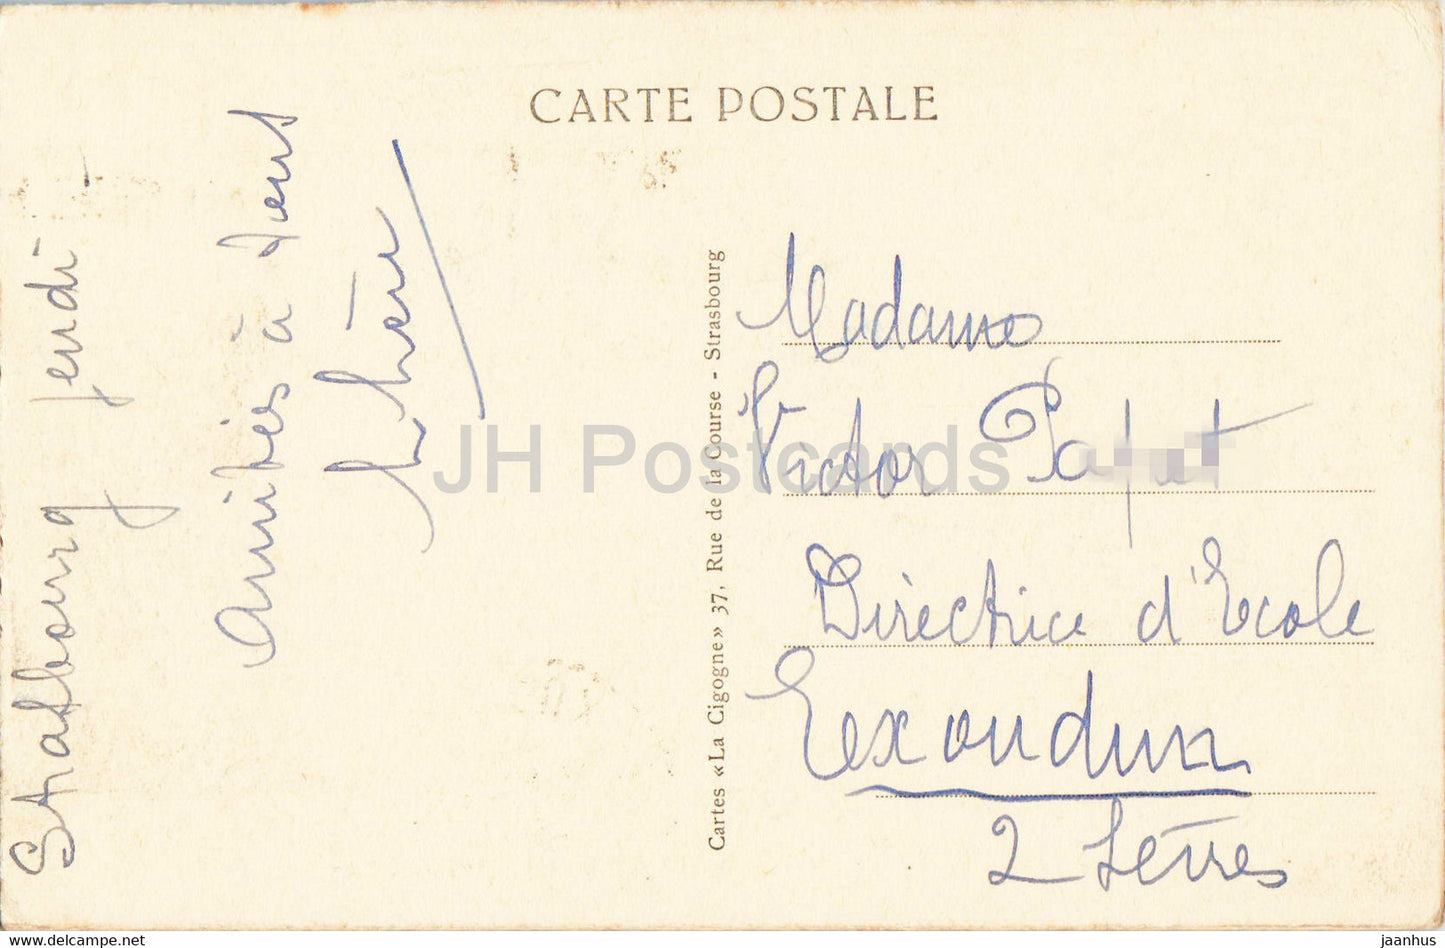 Strassburg i E - Straßburg - Place de la République et Palais du Rhin - 1446 - alte Postkarte - 1937 - Frankreich - gebraucht